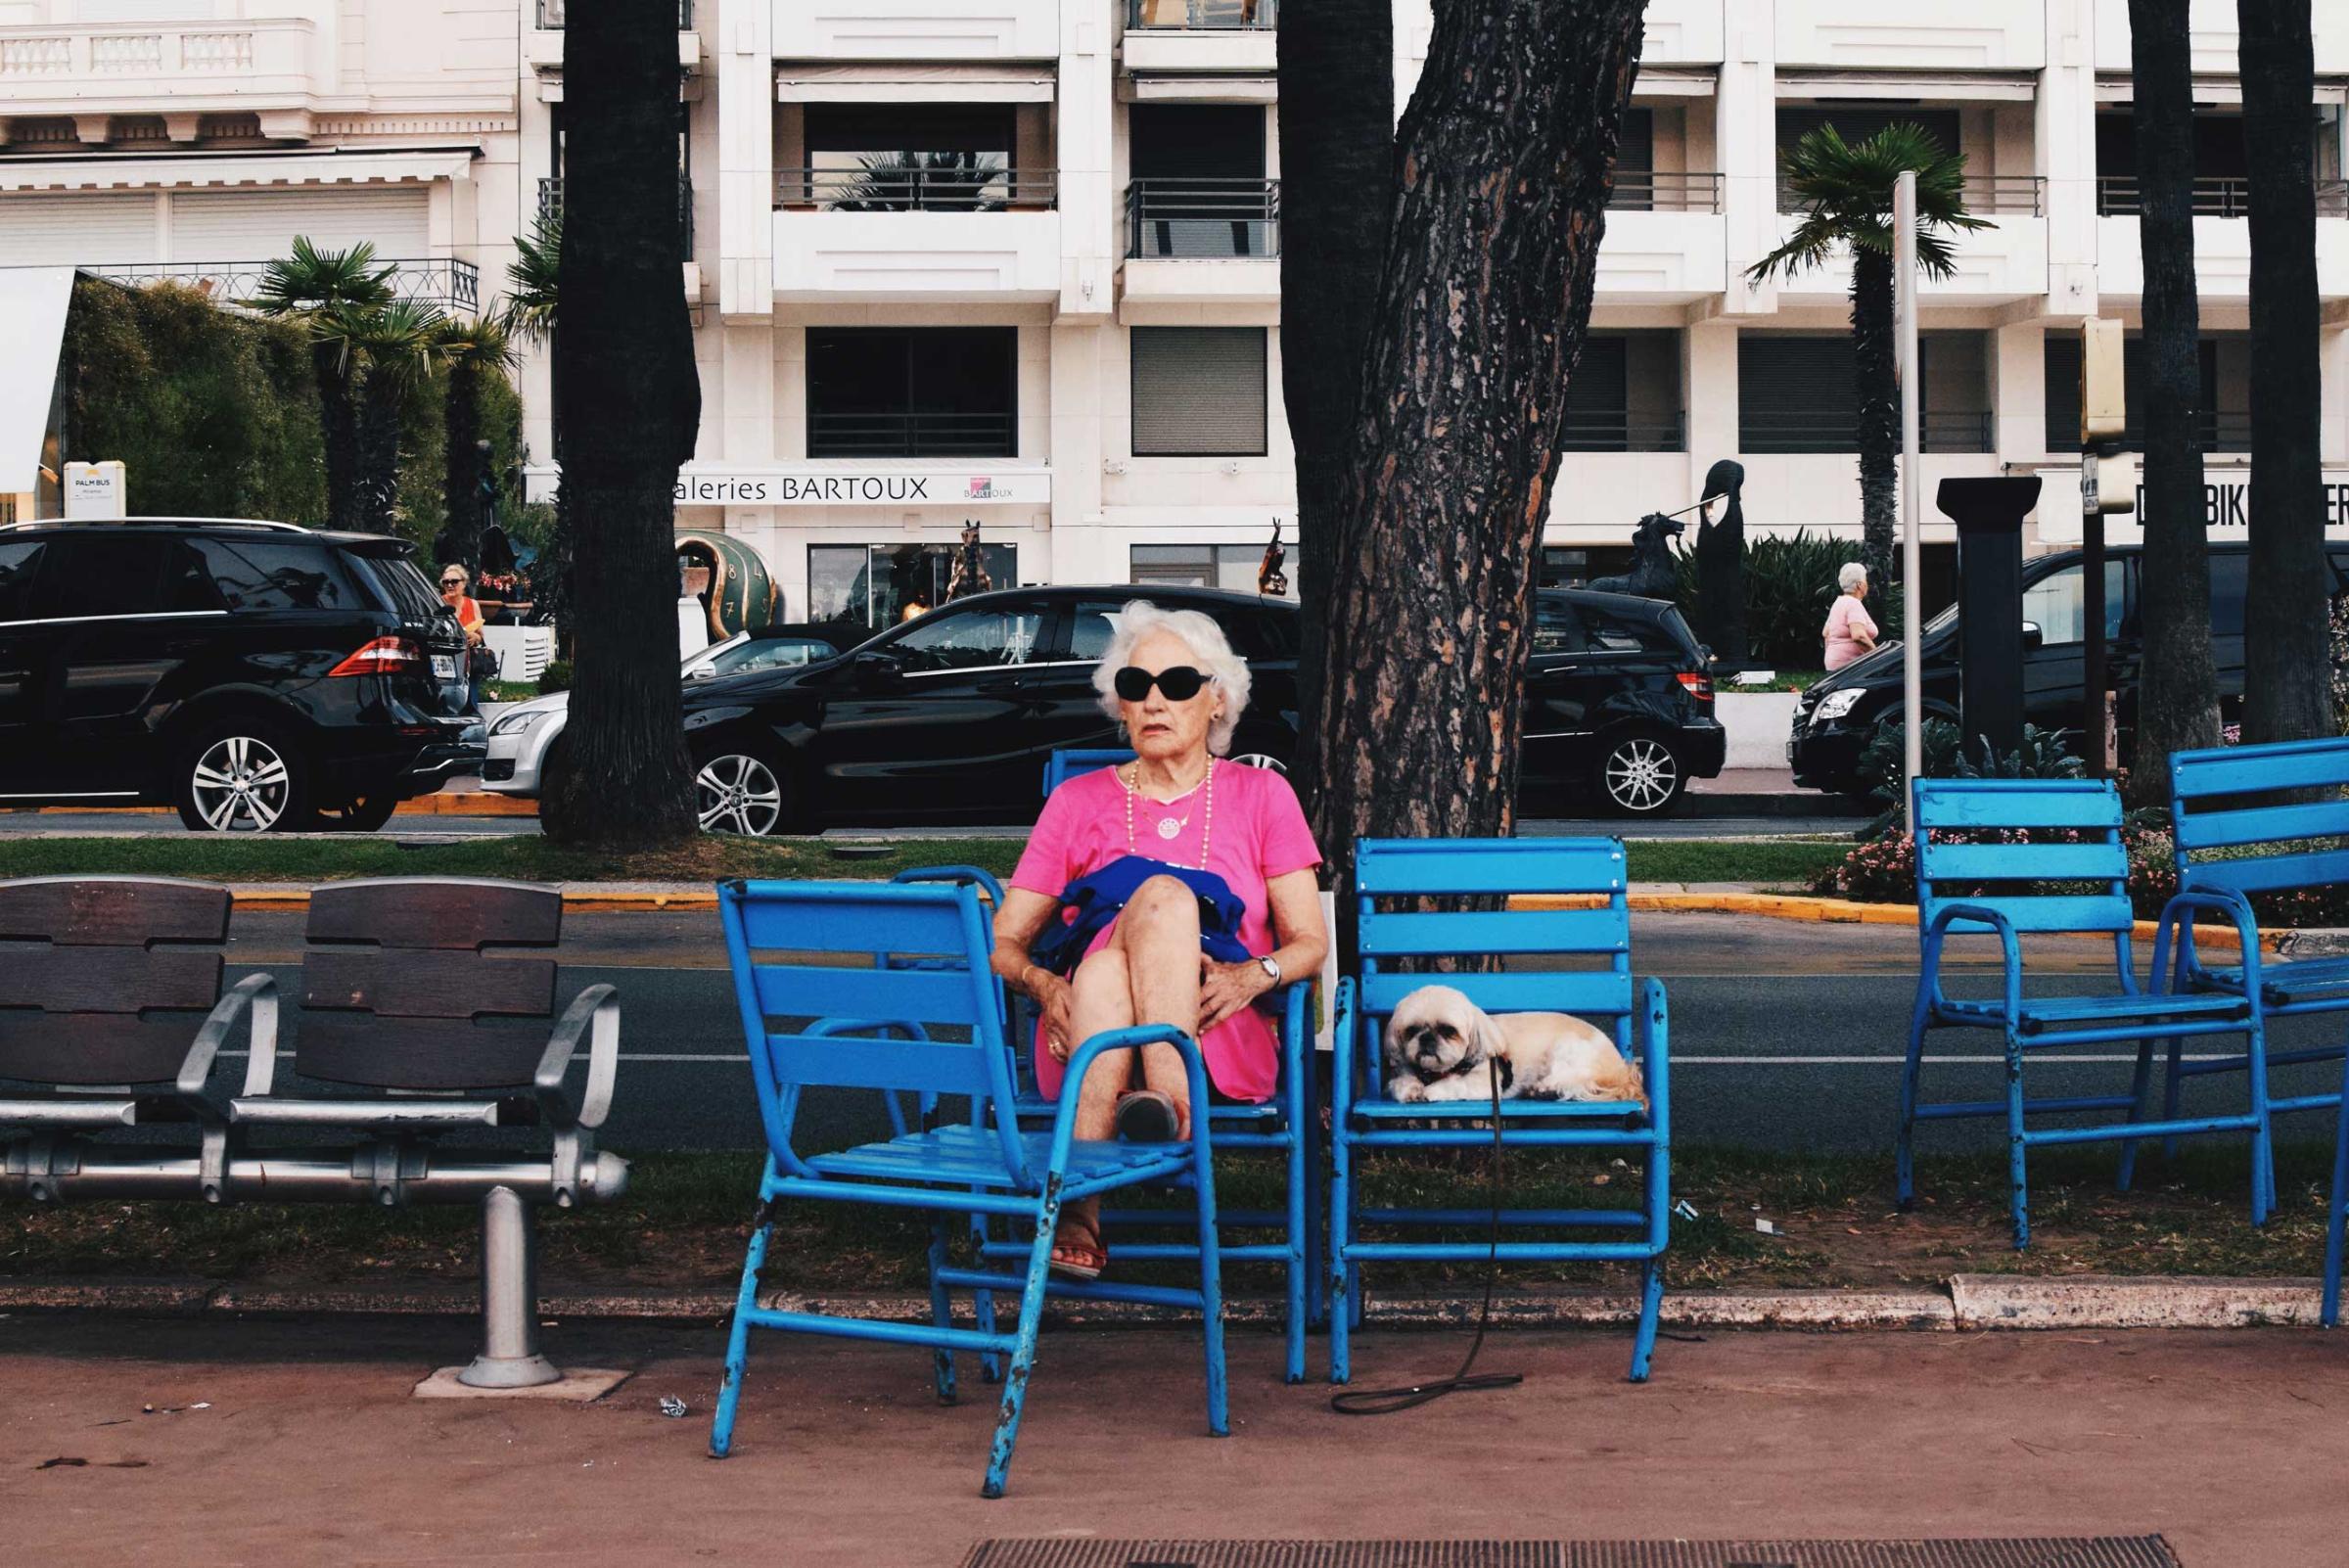 A woman relaxes along the Promenade de la Croisette in Cannes, France in 2015.